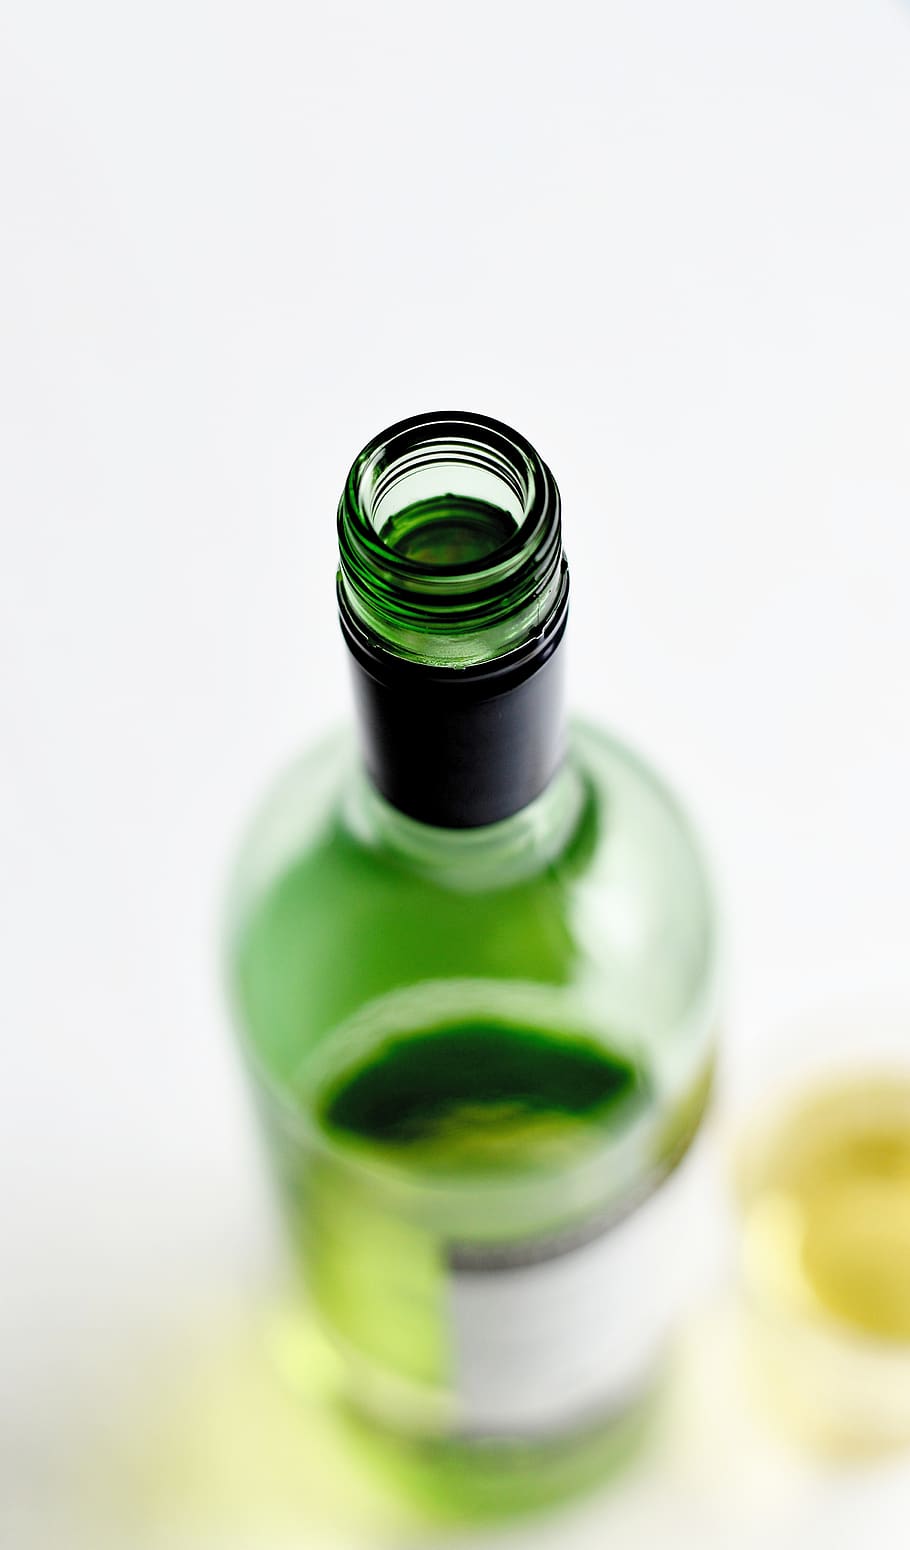 wine bottle, bottleneck, drink, alcohol, white wine, glass, green glass, bottle, wine tasting, screw cap